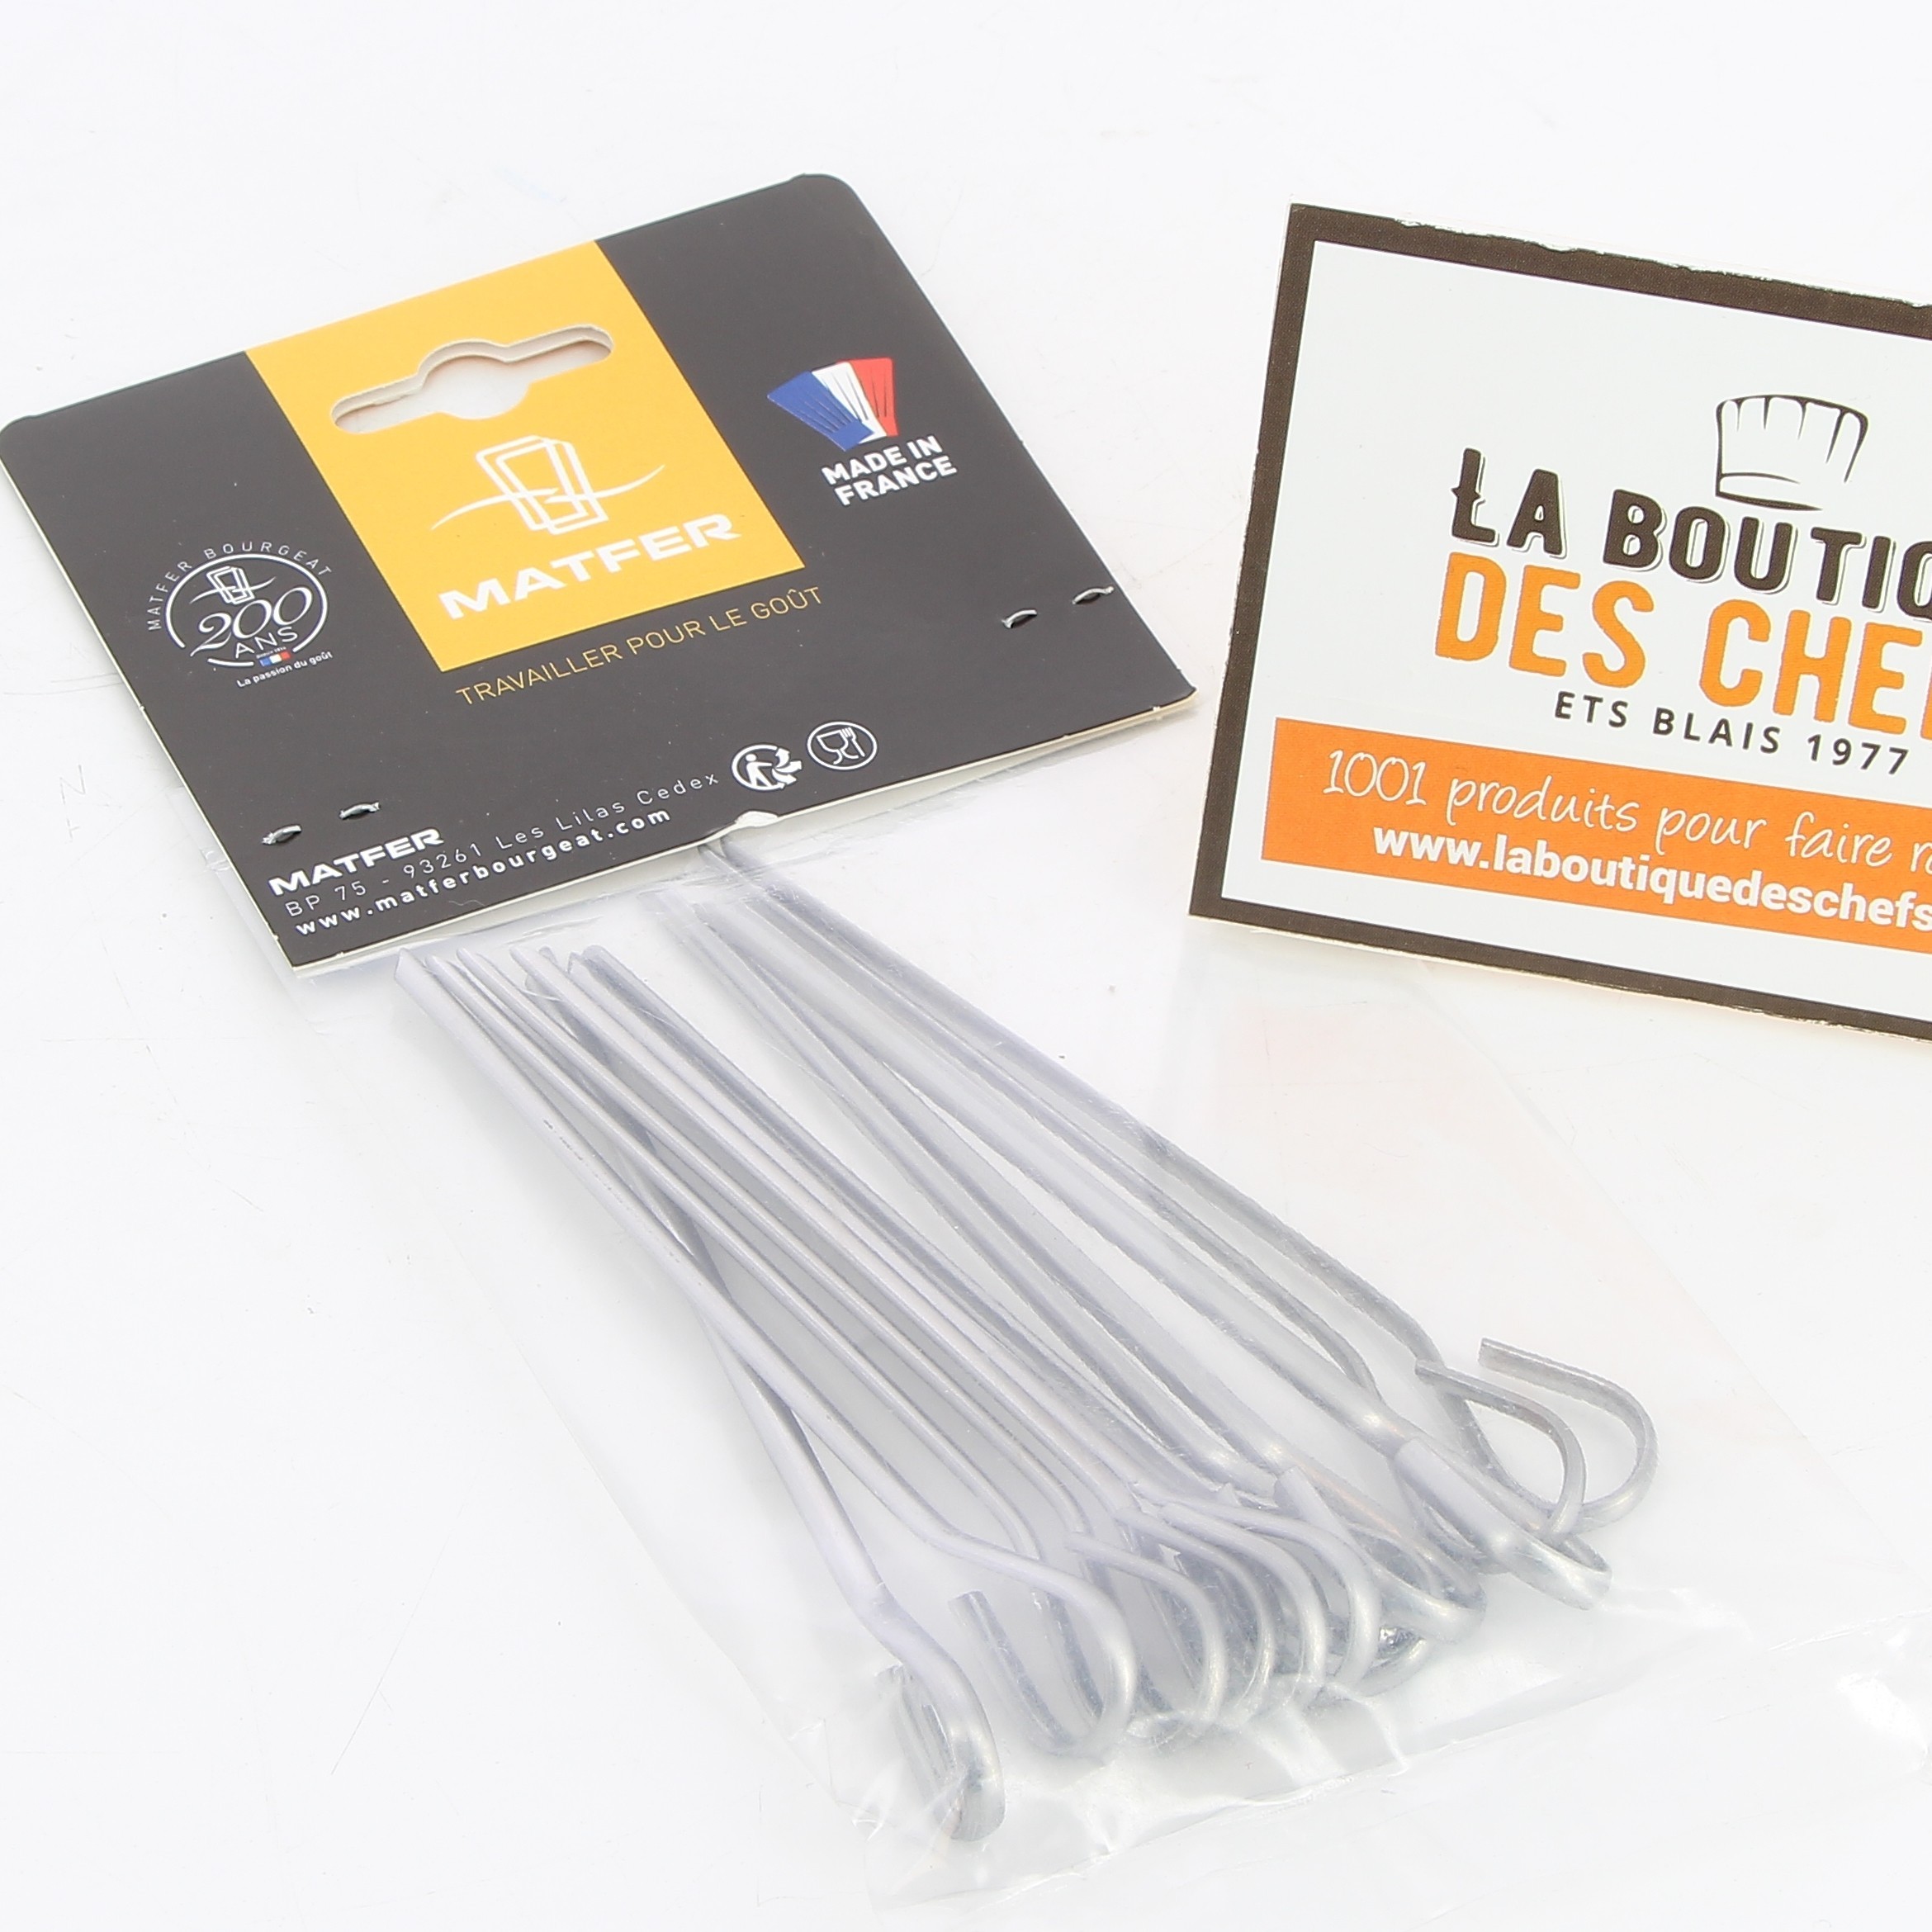 Piques à brochettes fabrication française pour vos barbecues